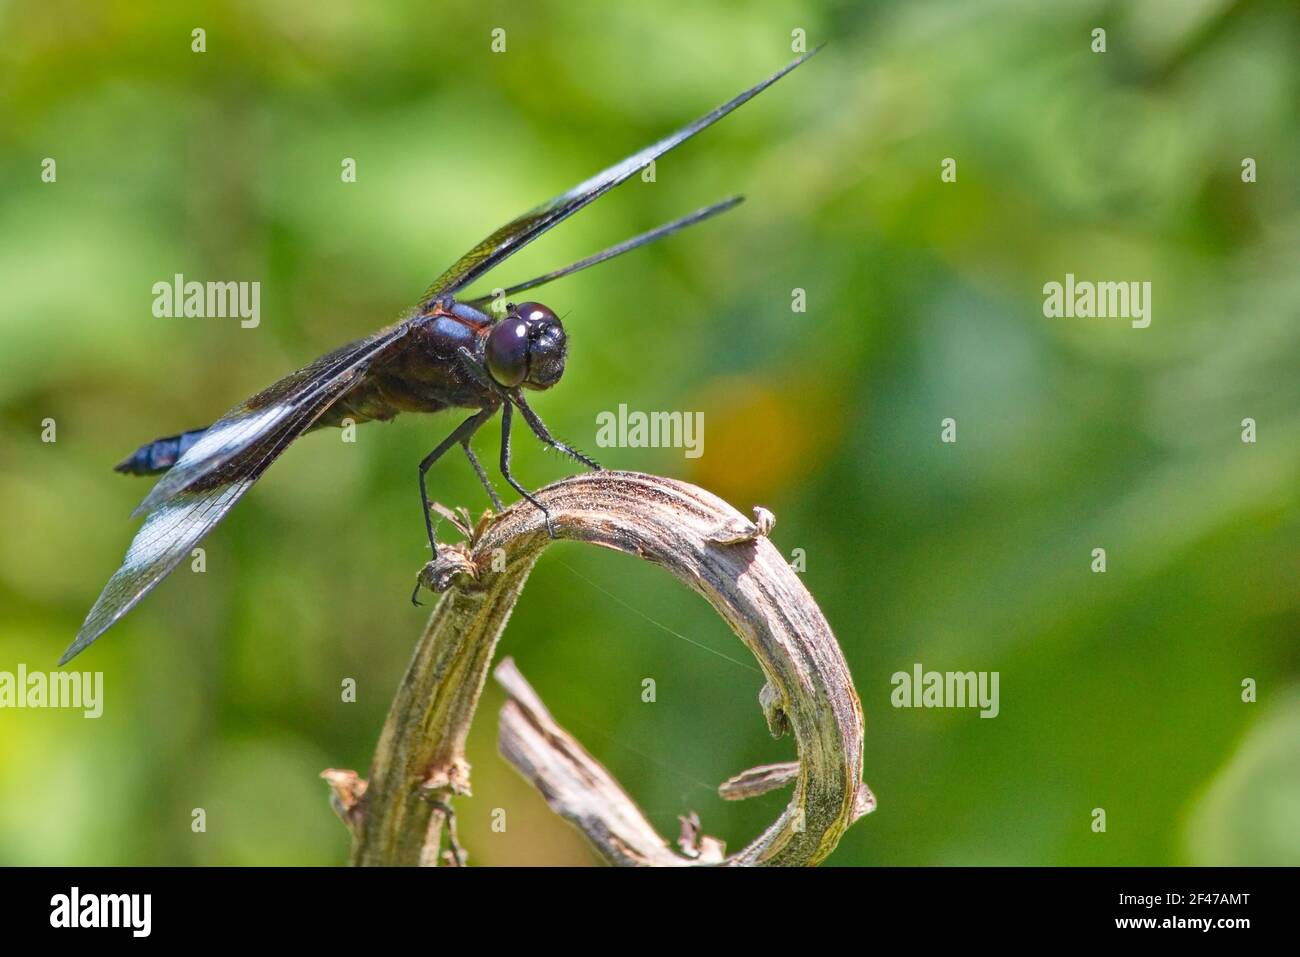 Vista horizontal de una libélula skimmer encaramada en la parte superior de un tallo seco de la planta con un agradable fuera de foco verde follaje fondo Foto de stock